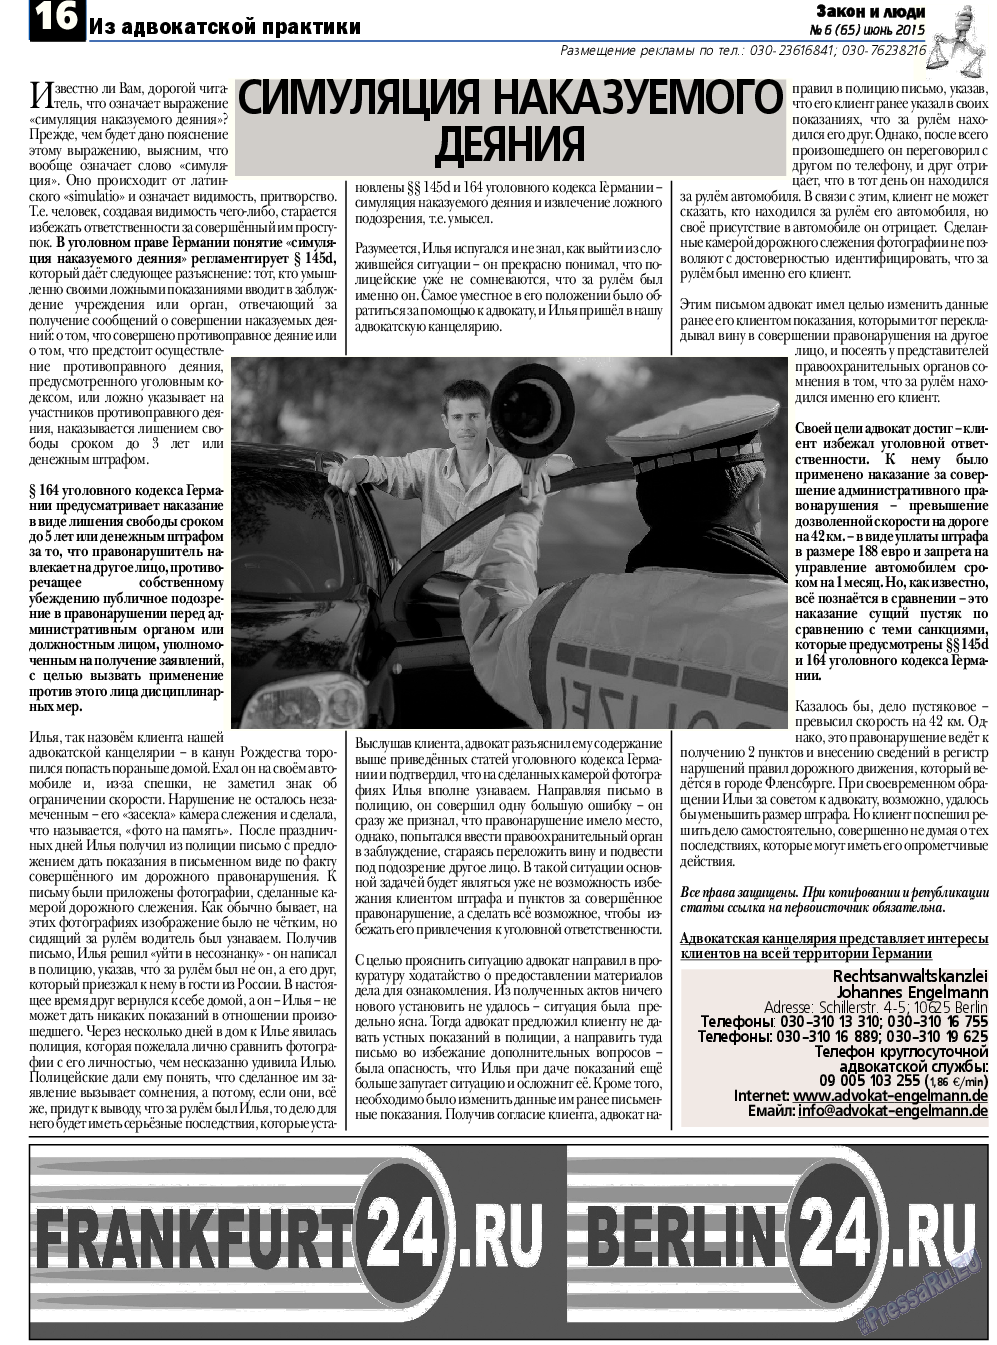 Закон и люди, газета. 2015 №6 стр.16